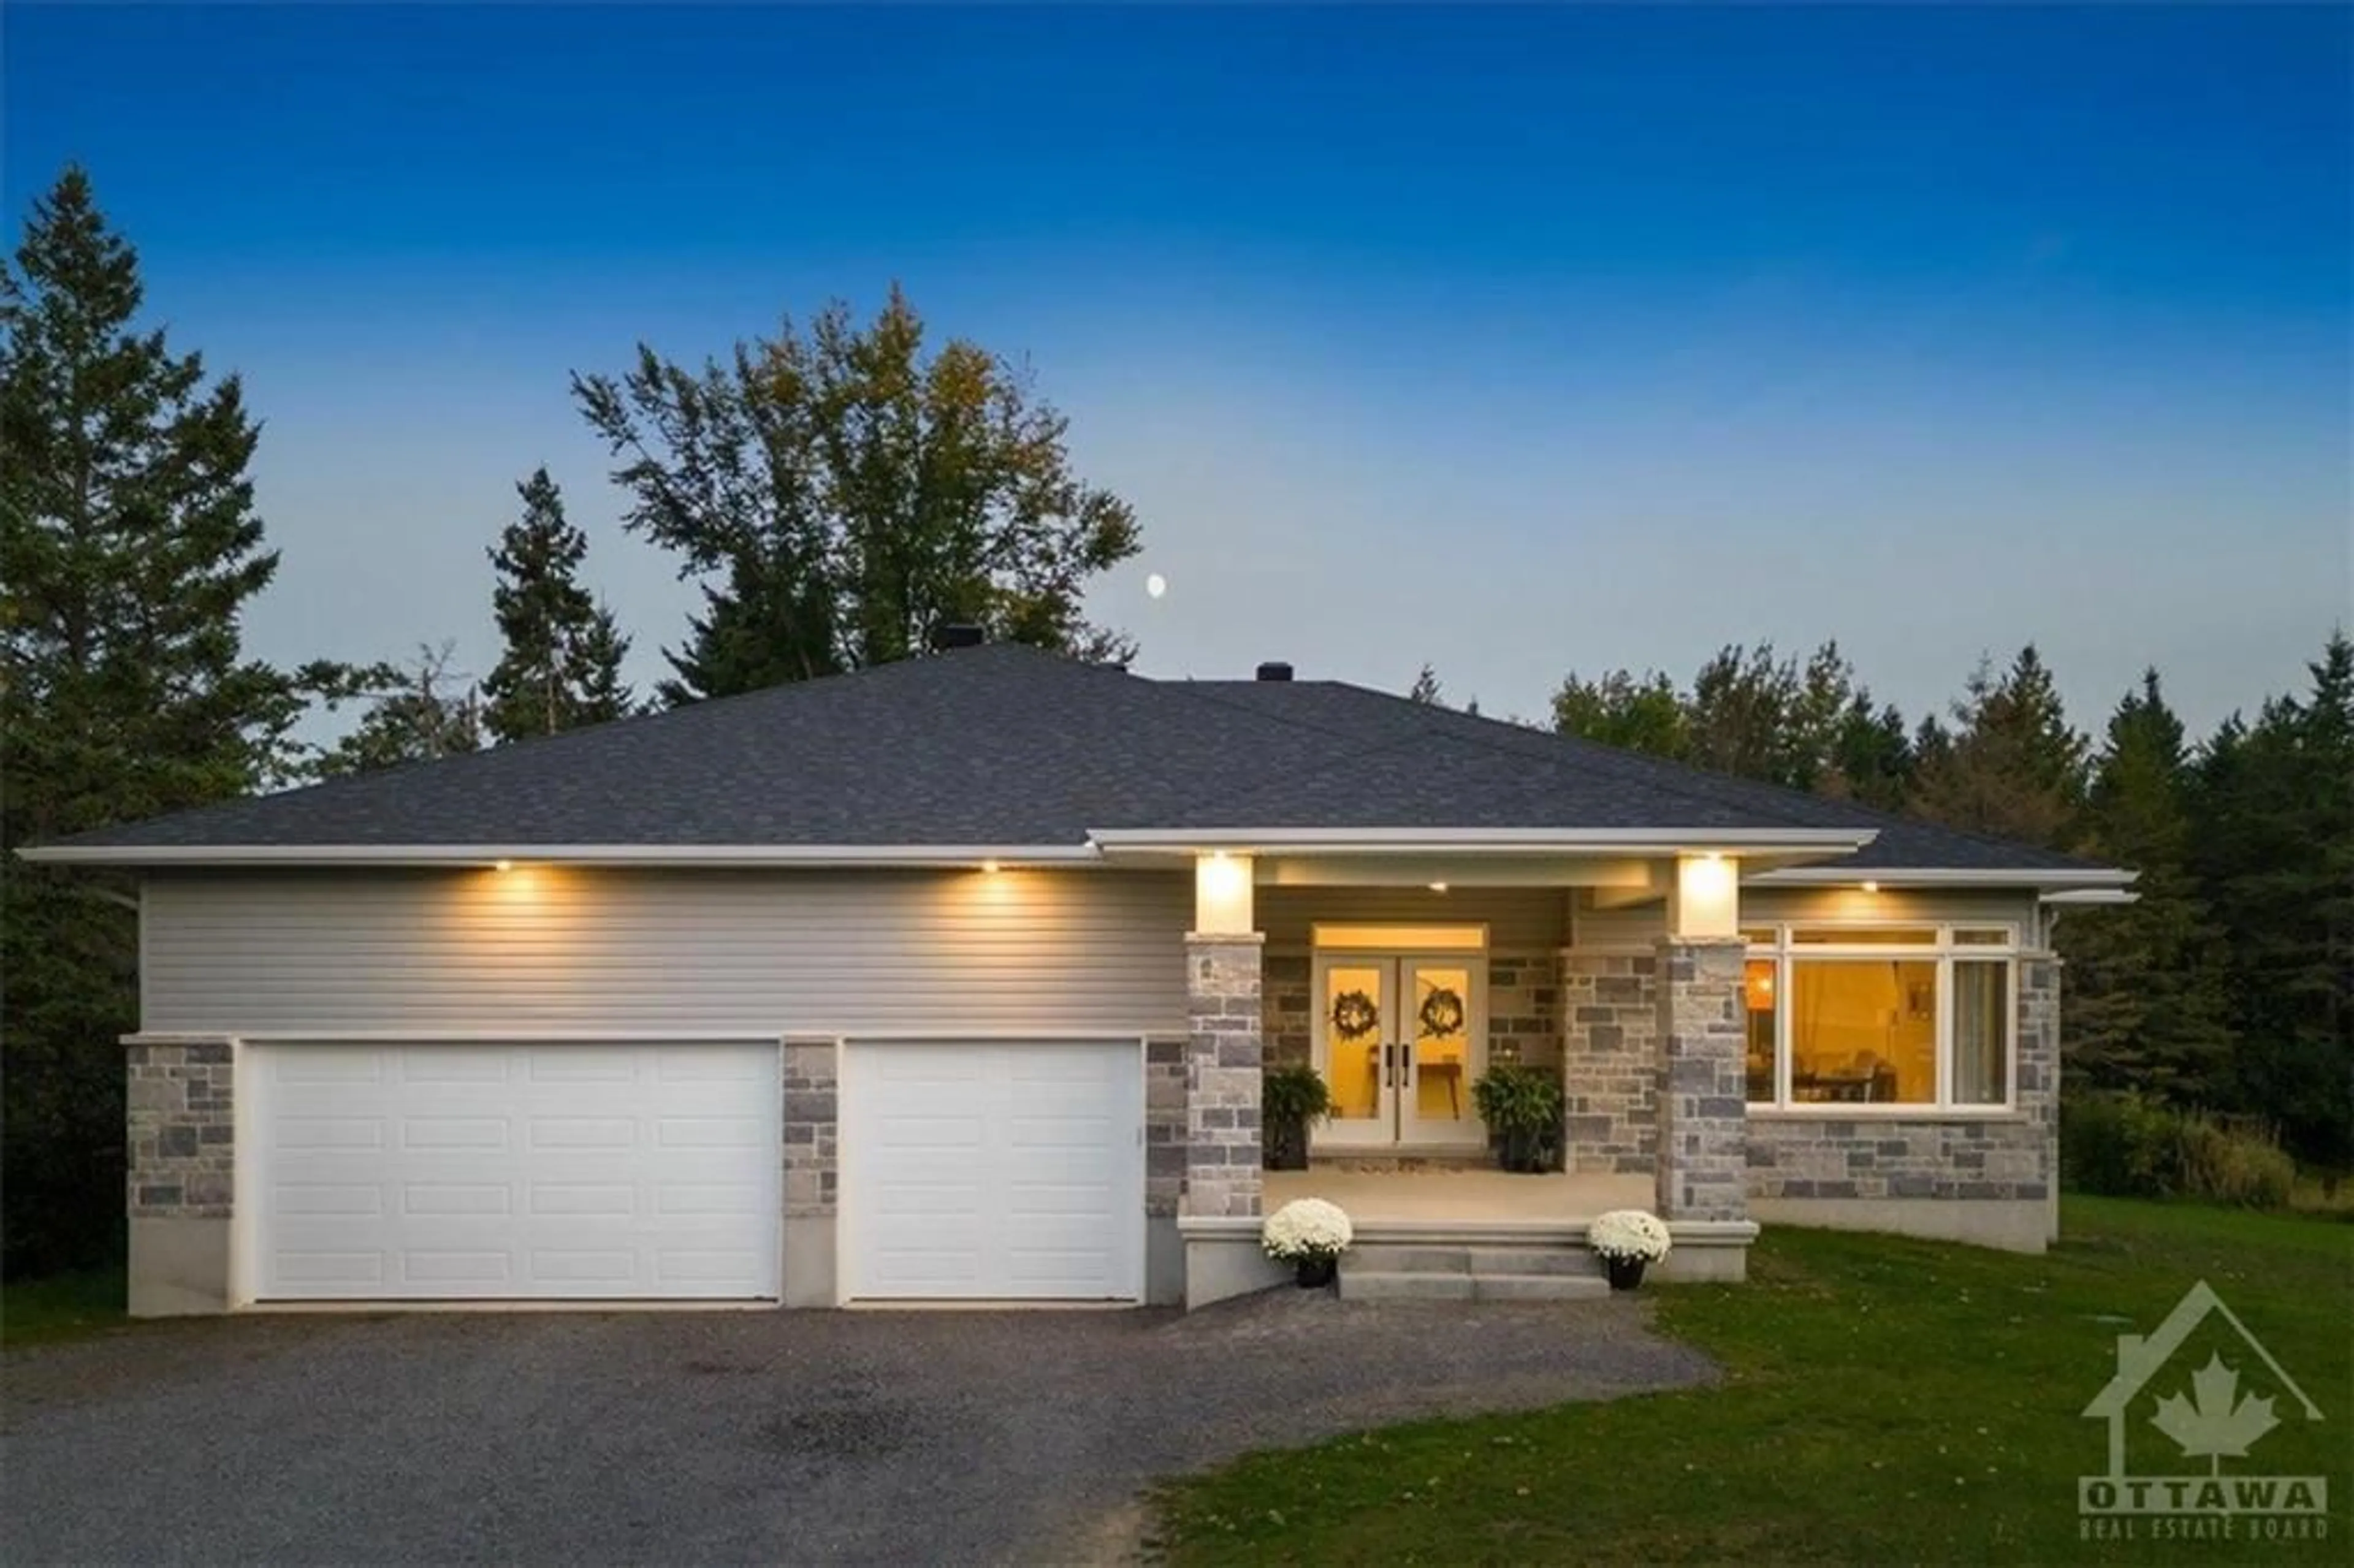 Home with vinyl exterior material for 285 RICHMOND Rd, Ashton Ontario K0A 1B0